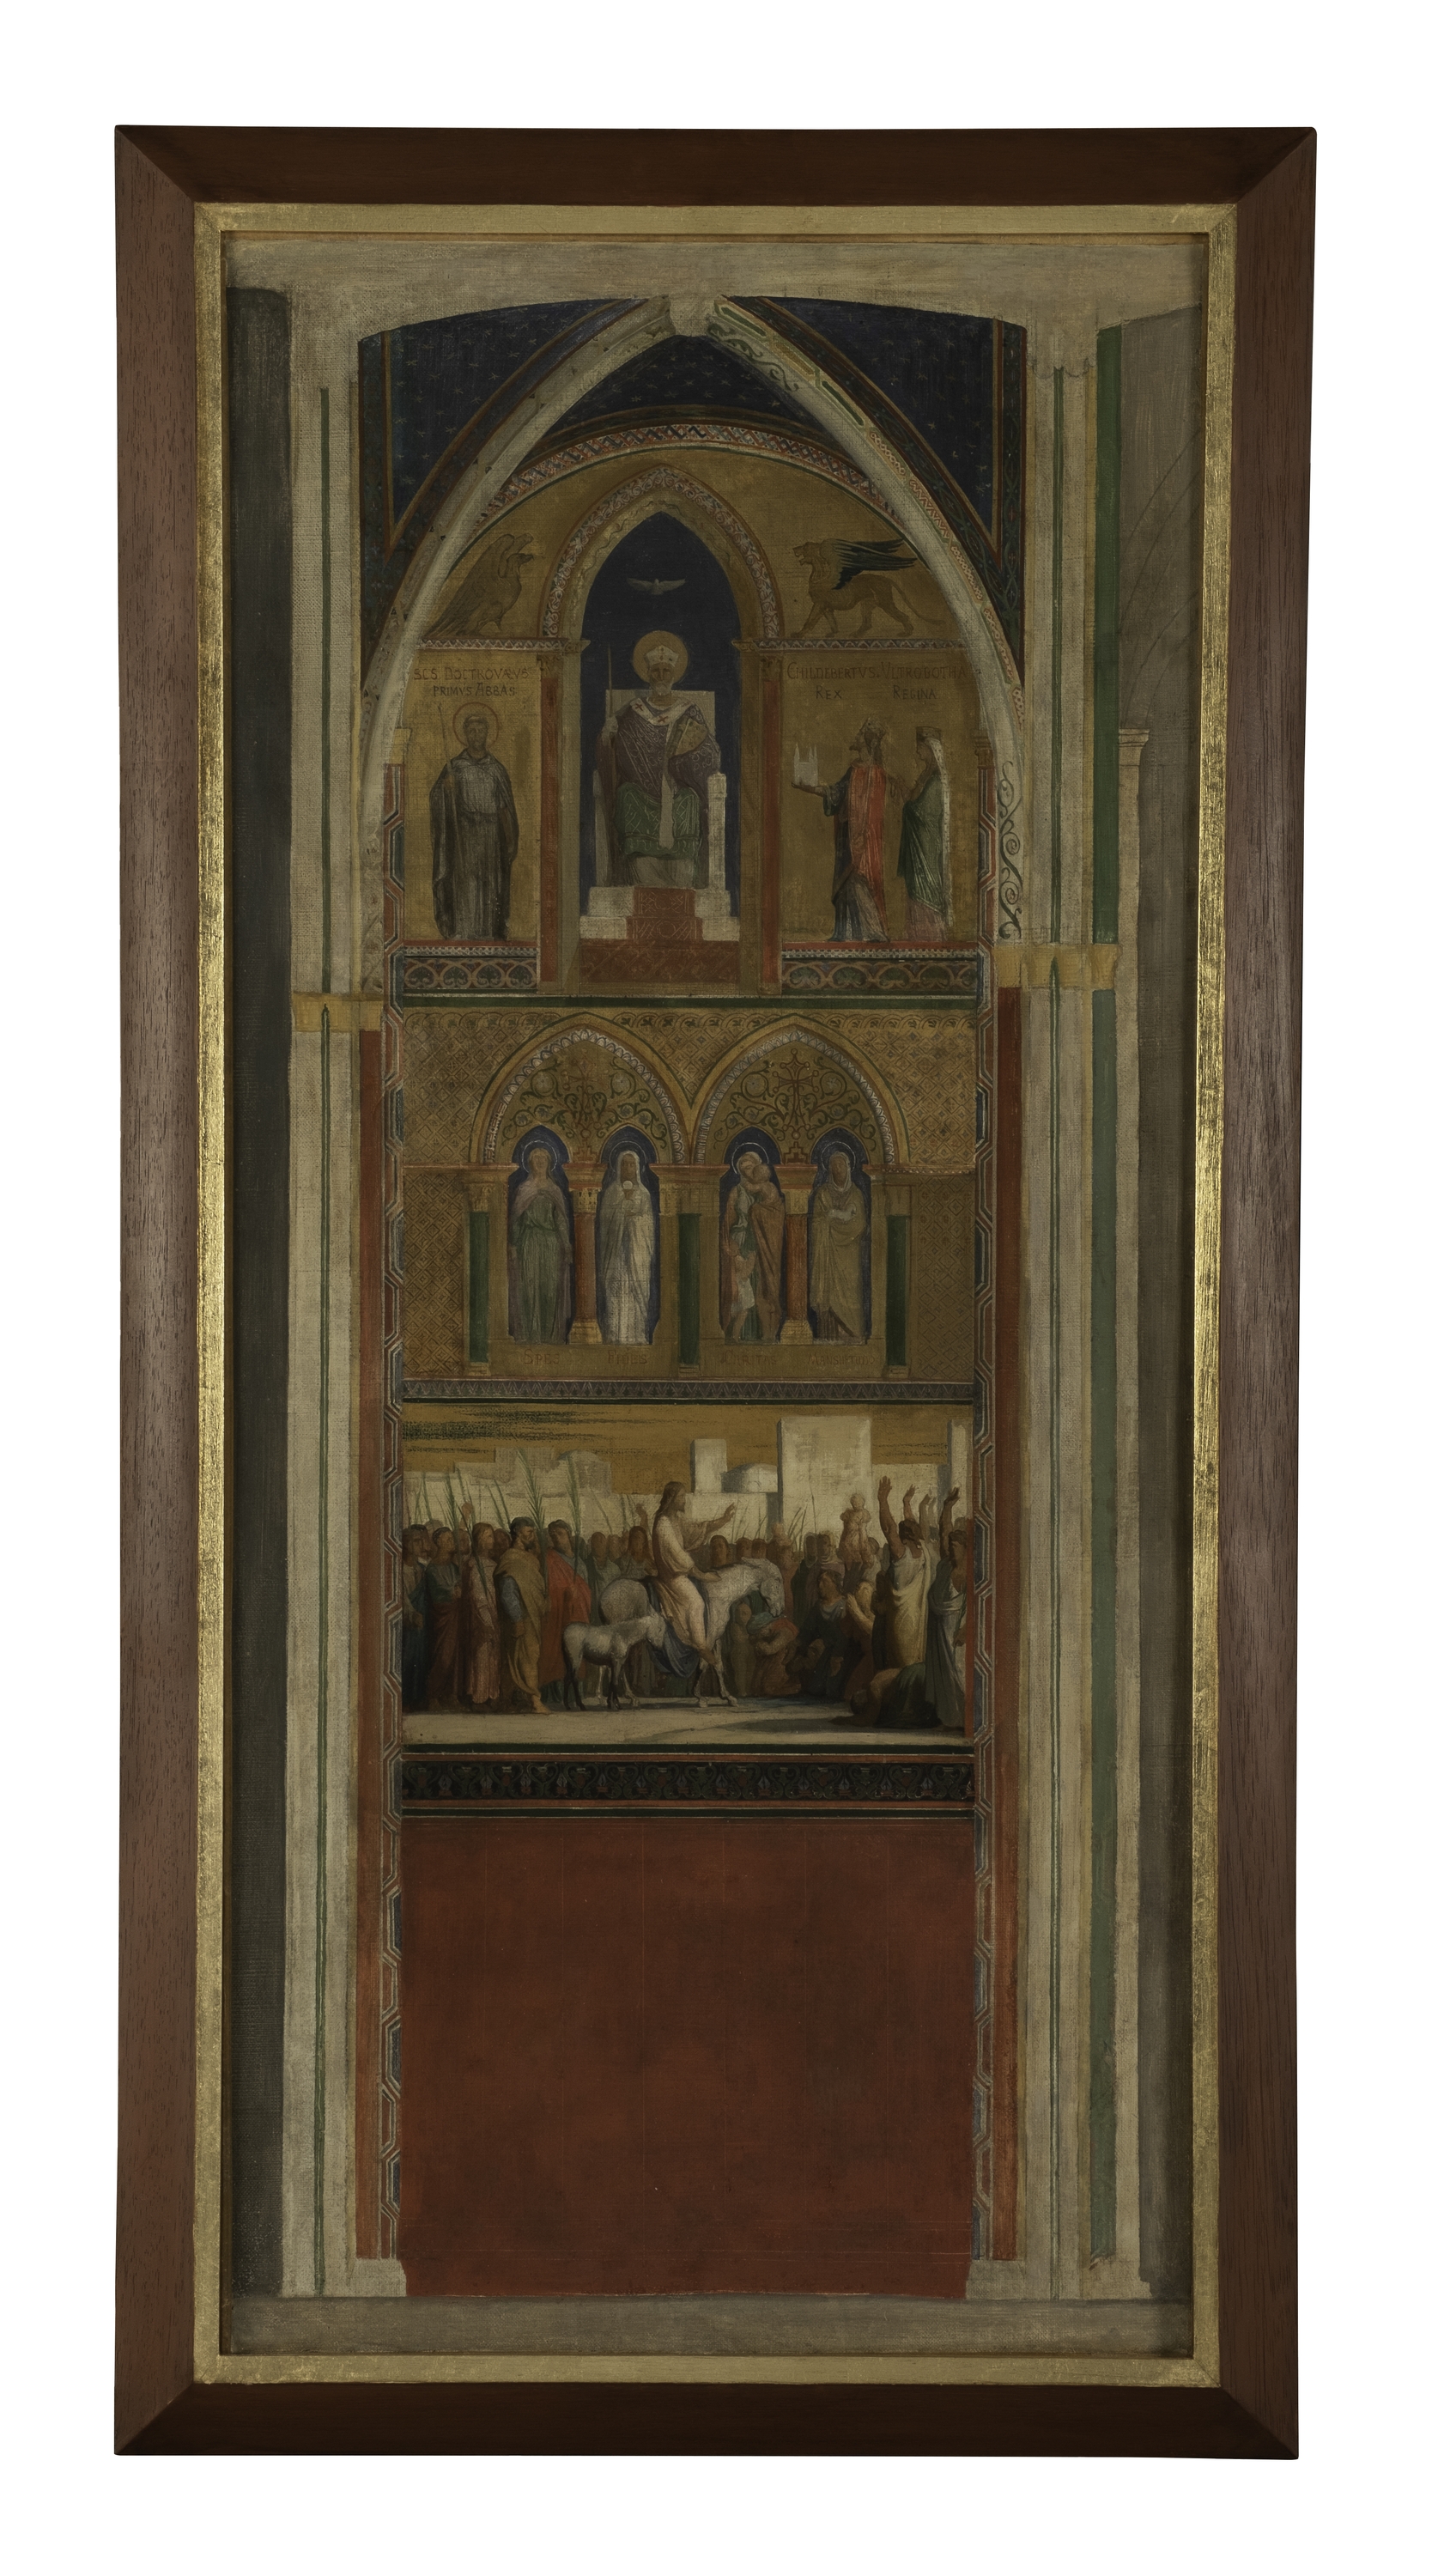 Flandrin, Esquisse pour la composition d'ensemble du décor du mur gauche de l'église Saint-Germain des Prés